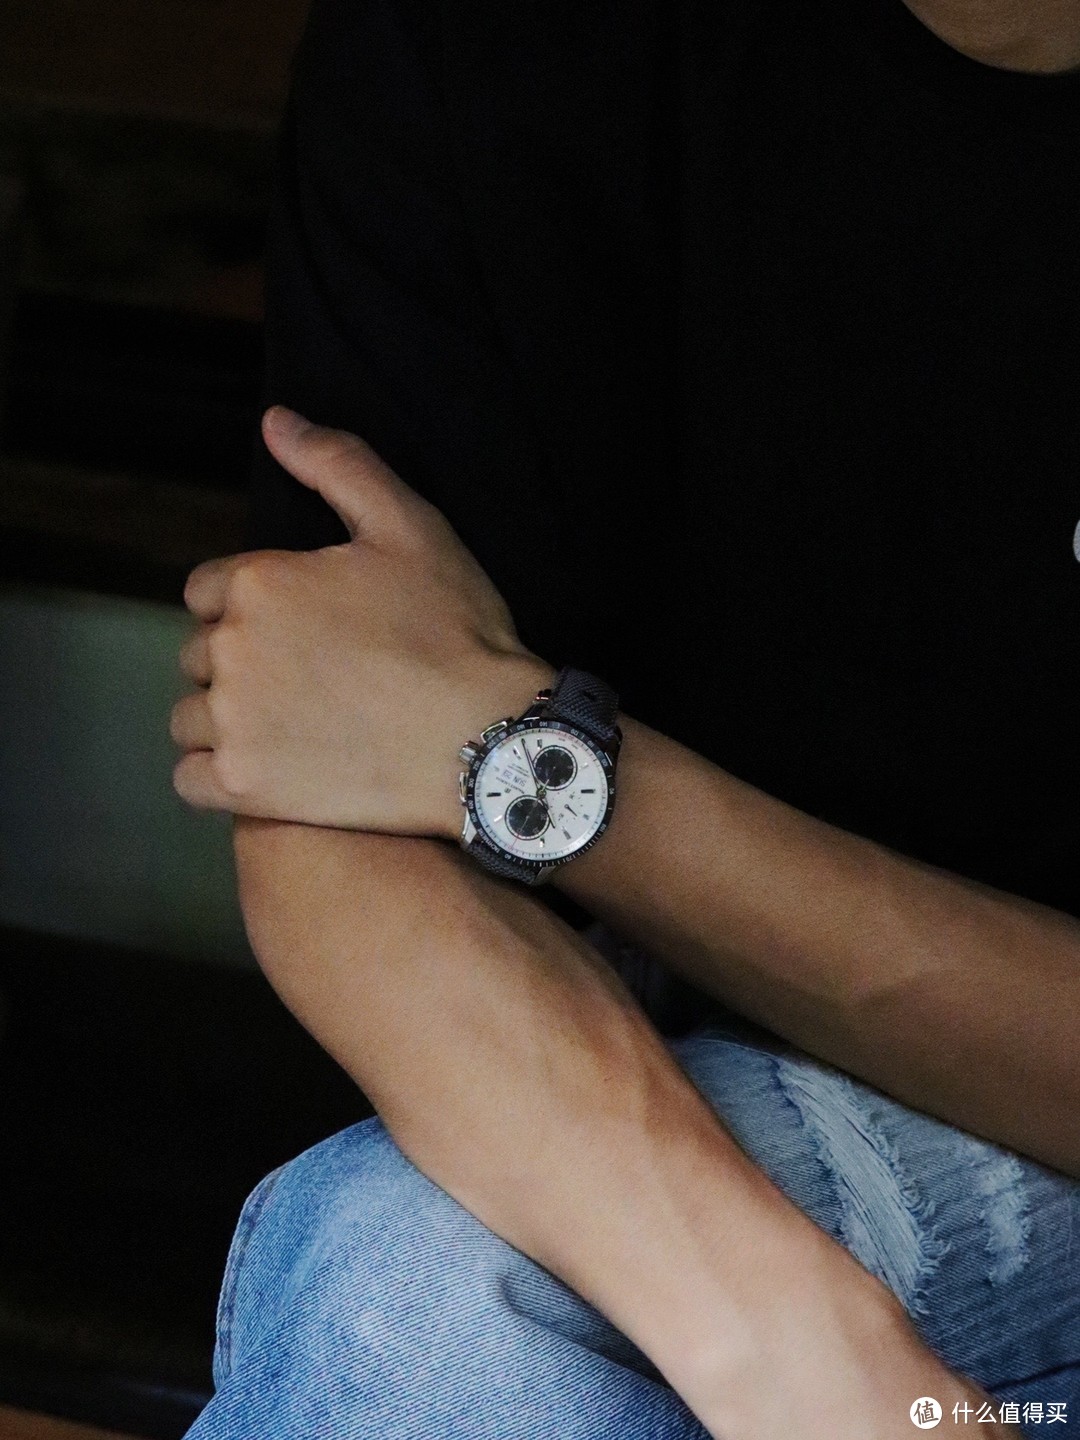 第一次接触艾美腕表，这枚熊猫计时腕表改变了我对品牌的印象